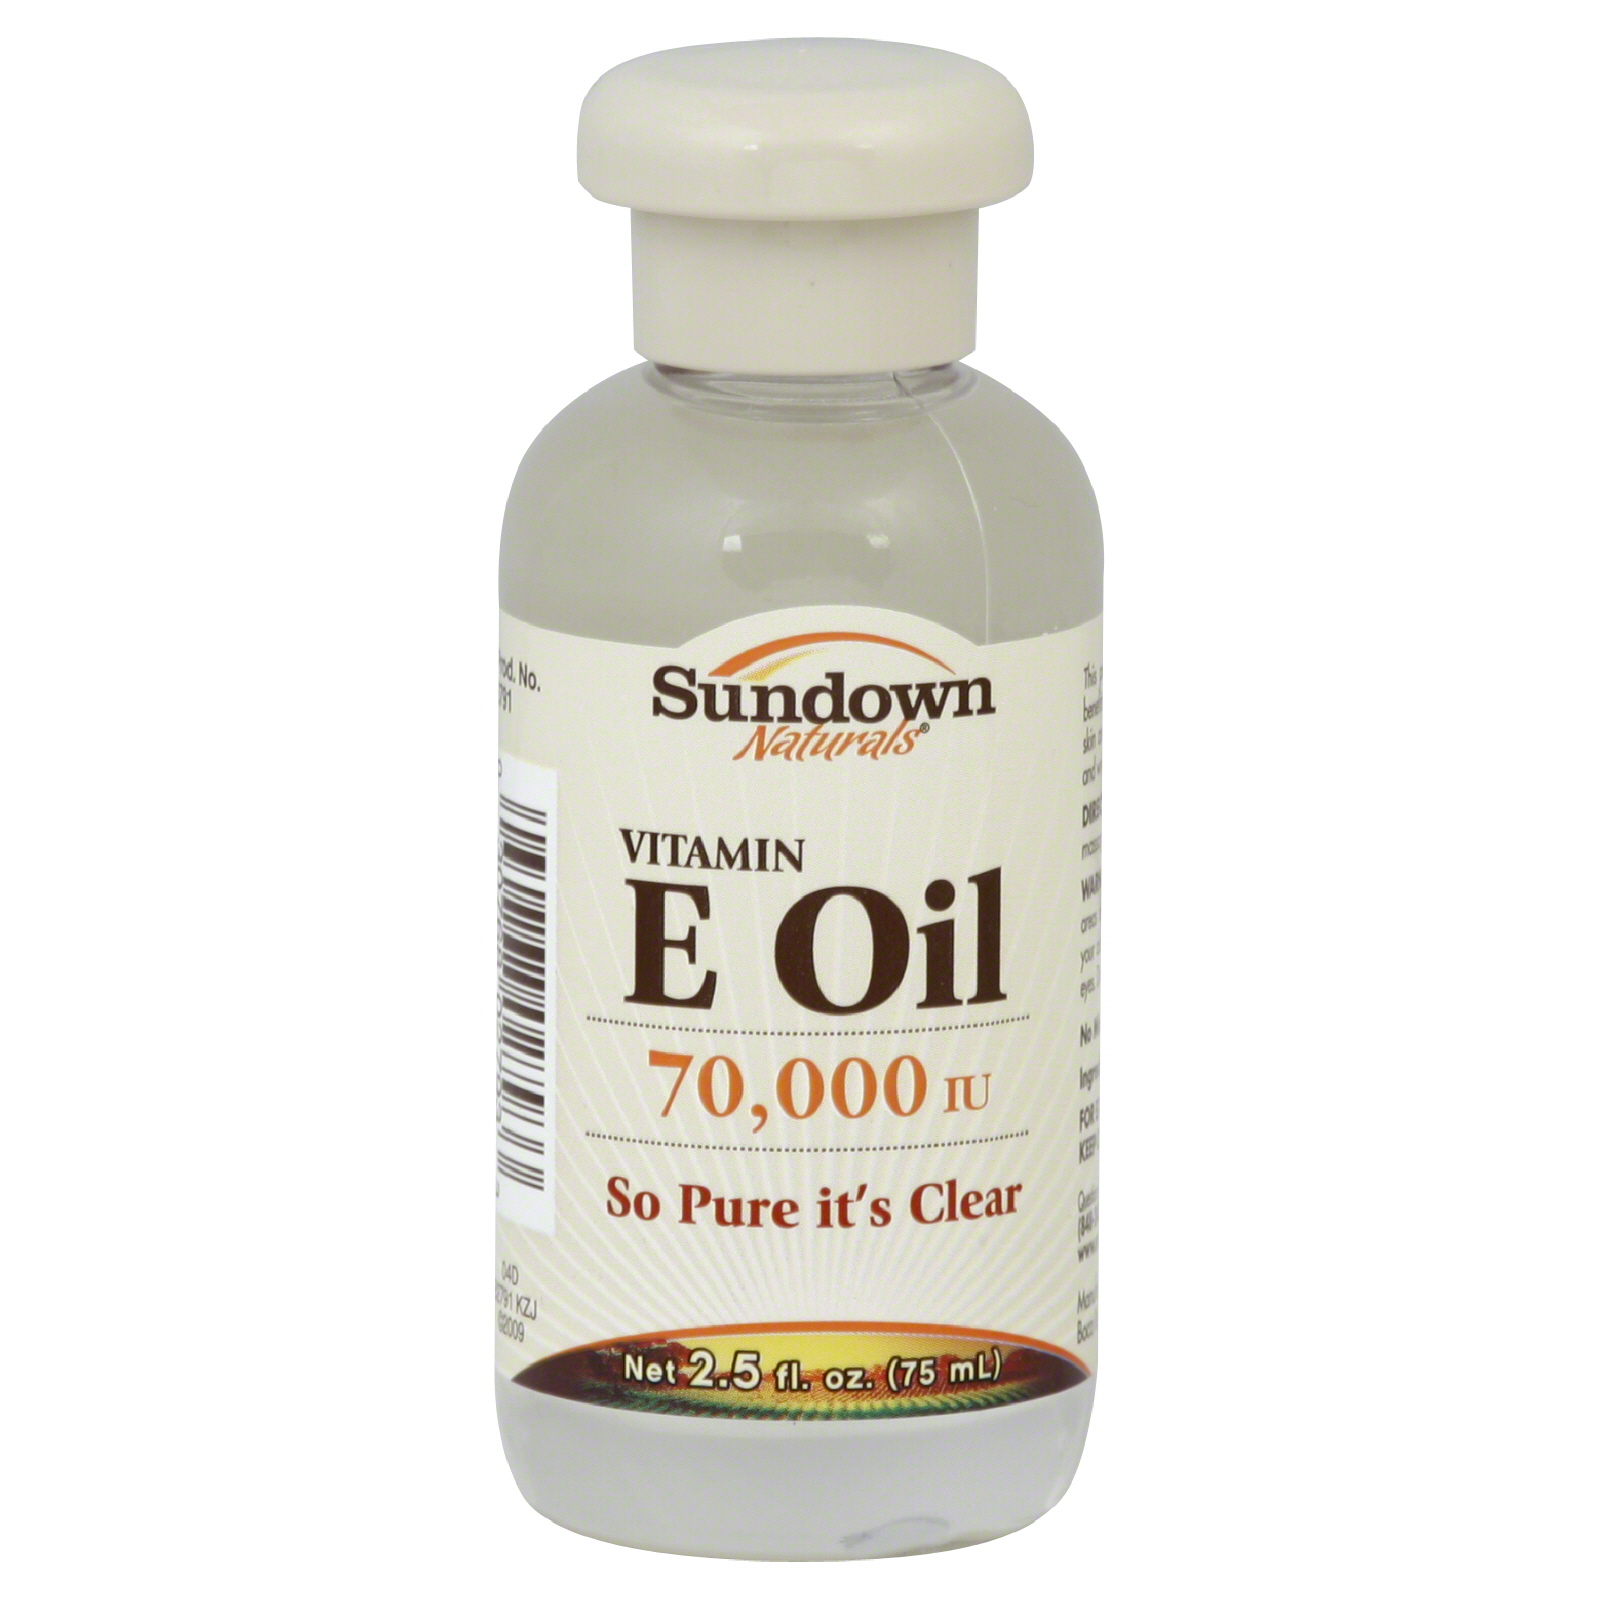 Sundown Vitamin E Oil, 70, 000 IU, 2.5 fl oz (75 ml)